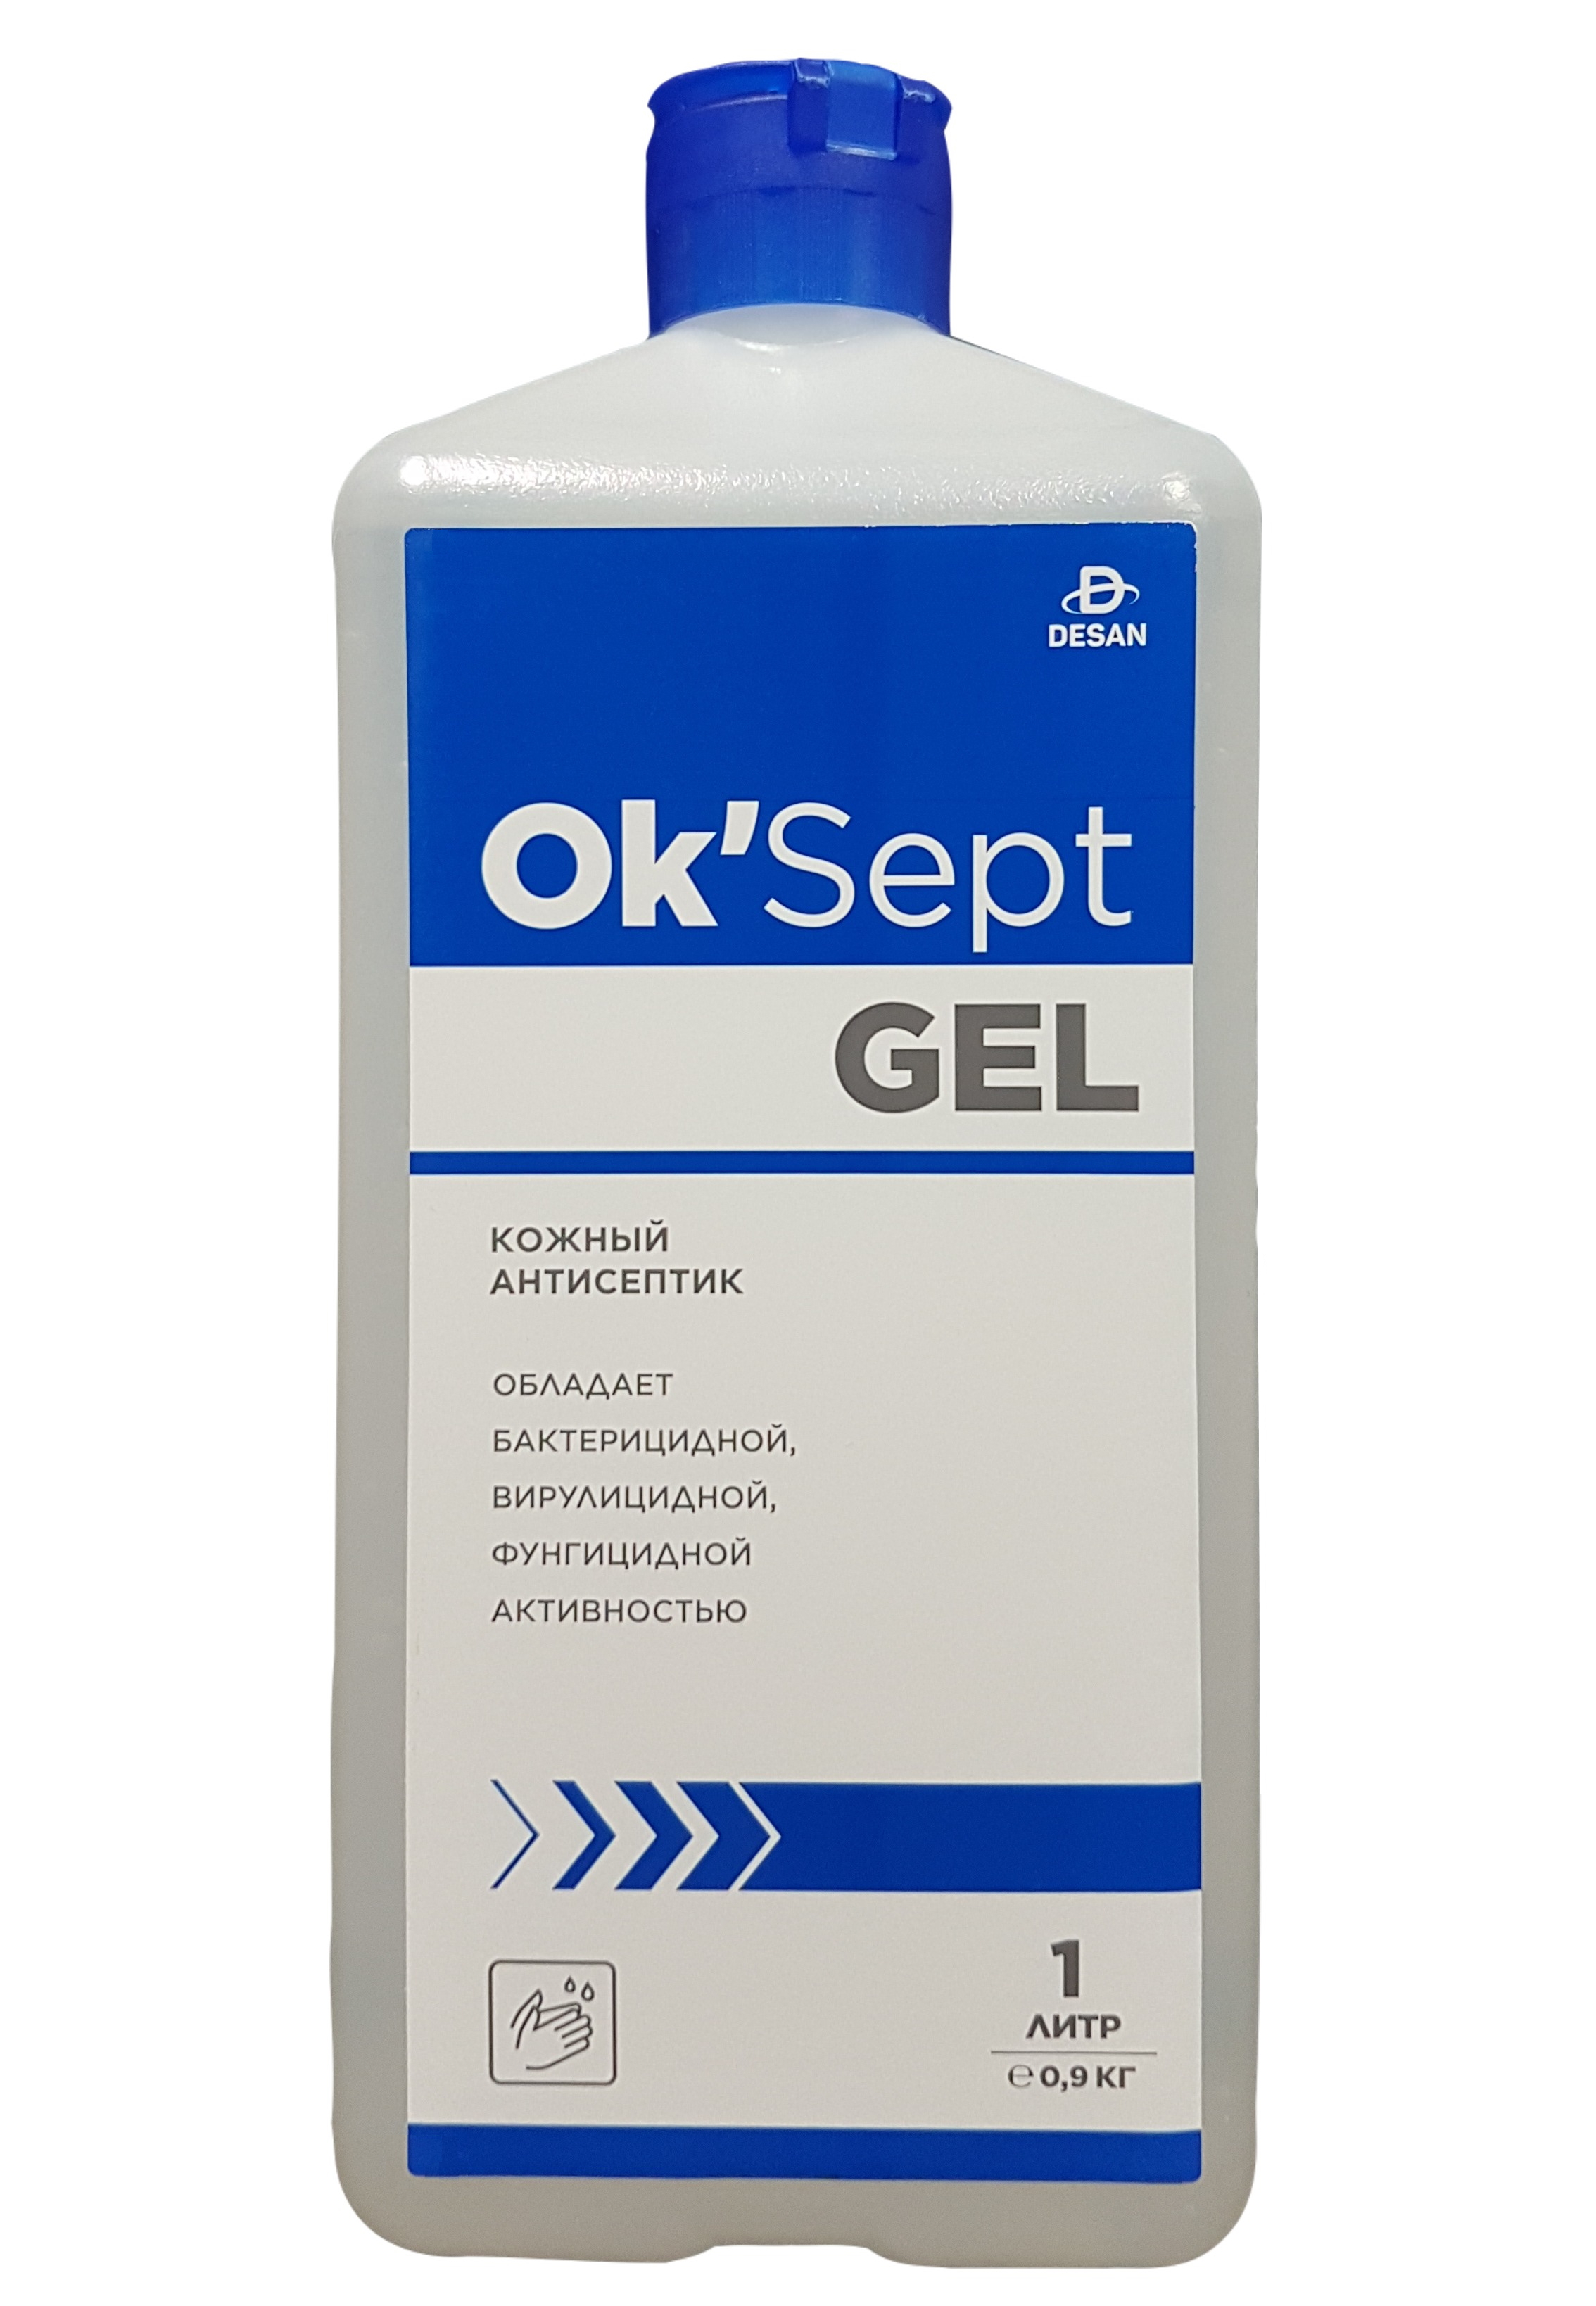 Антисептическое средство OK’Sept gel (ОК'Септ гель) 1 литр антисептическое средство астрадез септ 1 литр